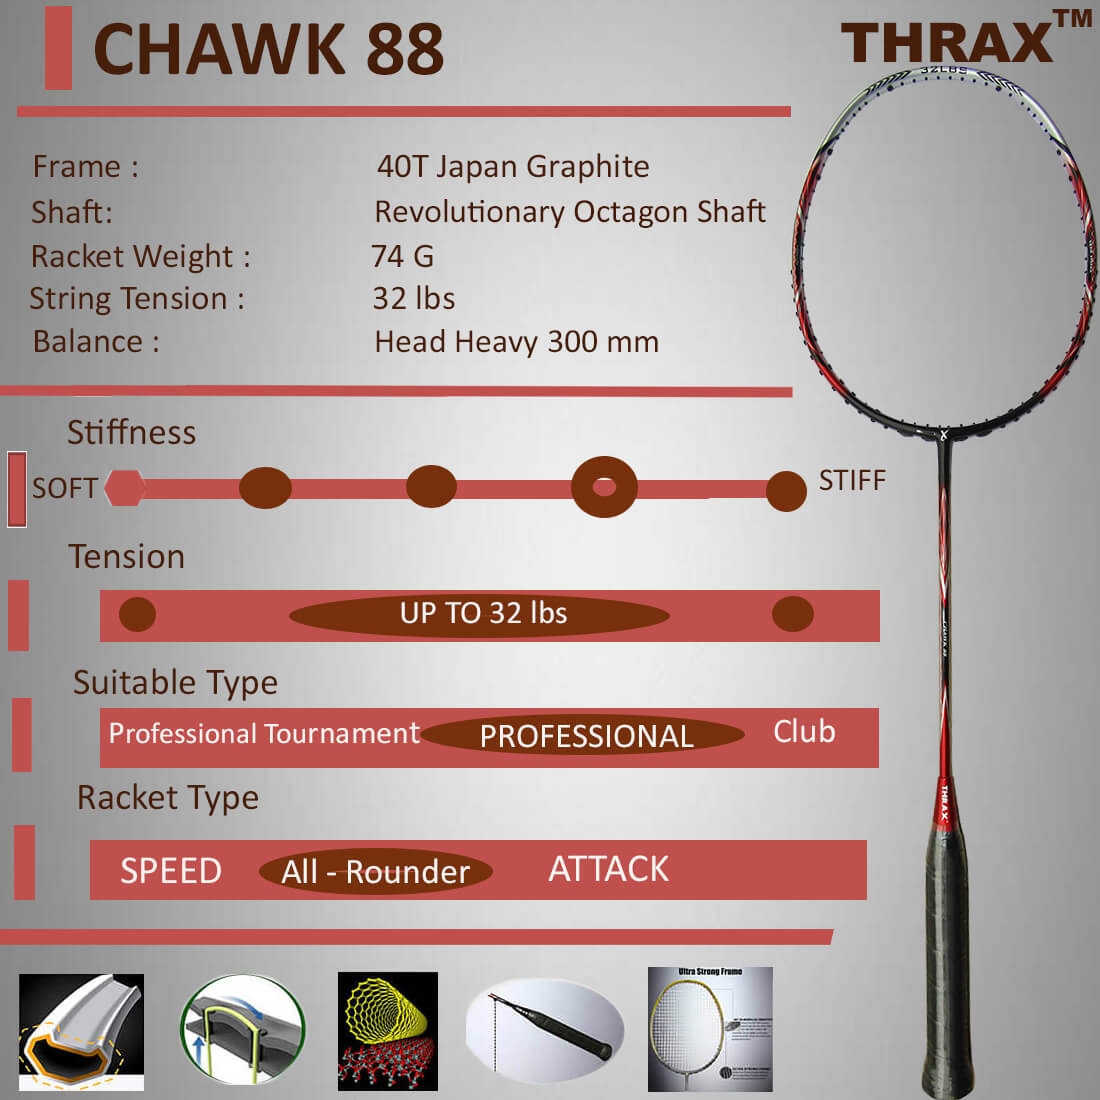 Thrax_CHawk_88_Badminton_Racket_02